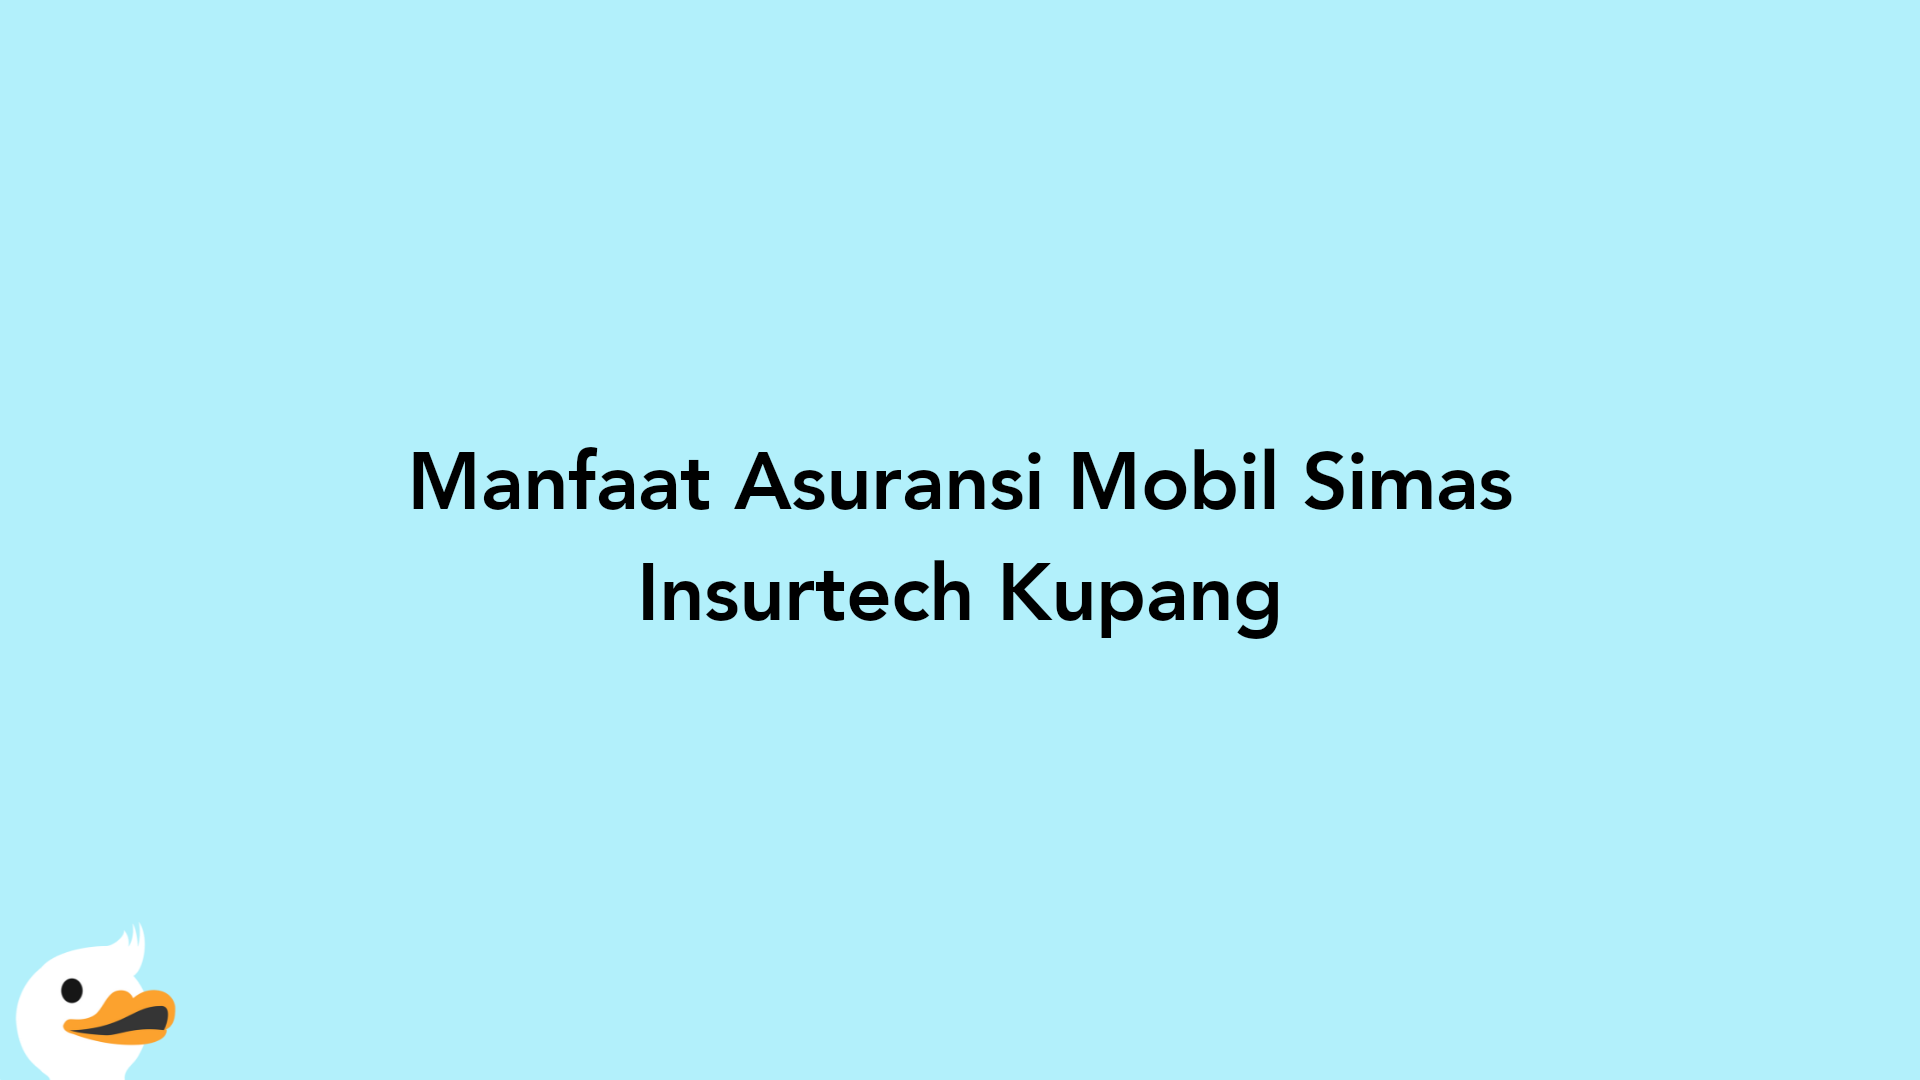 Manfaat Asuransi Mobil Simas Insurtech Kupang